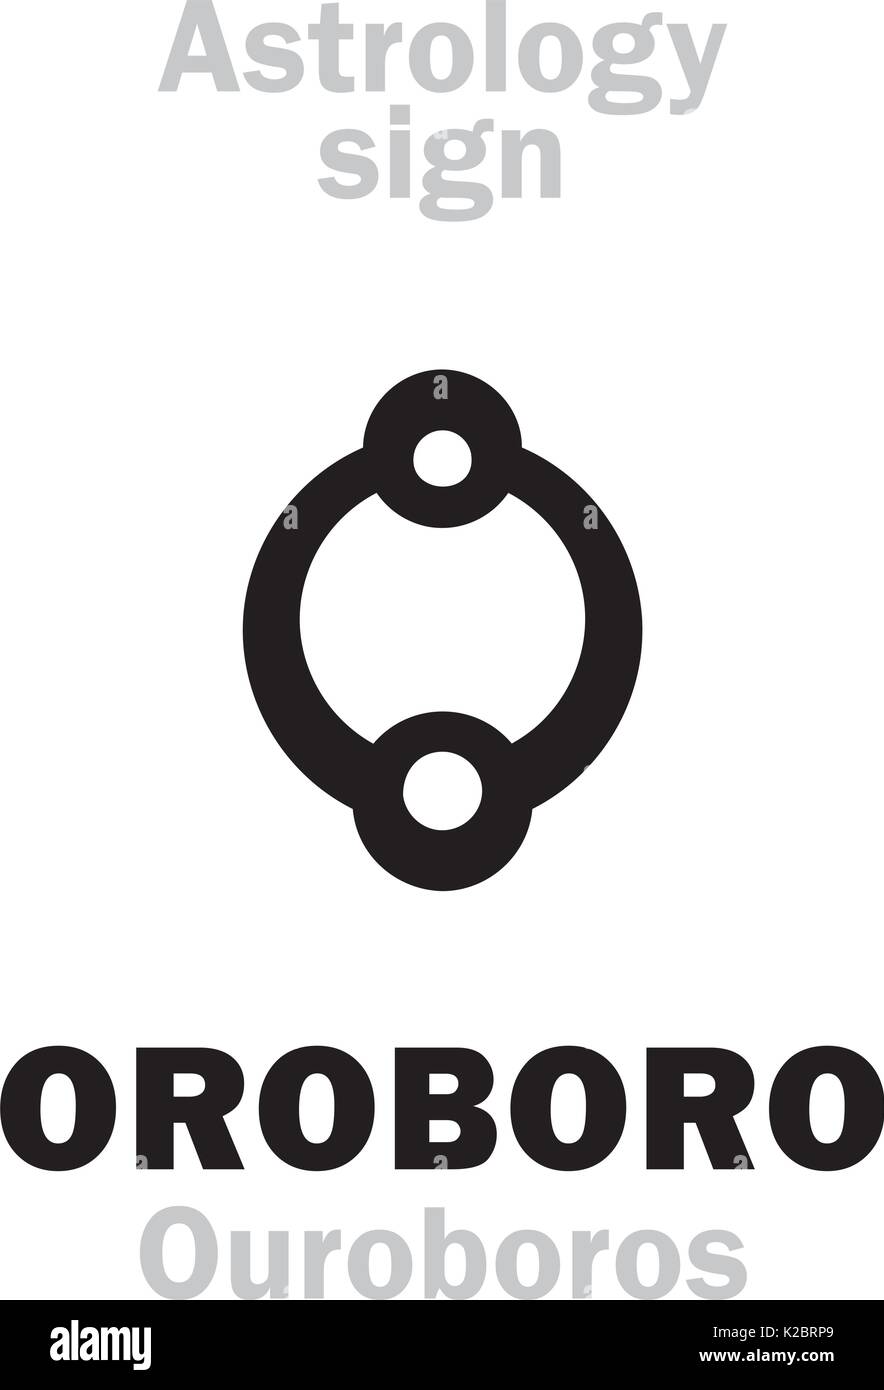 Astrologie Alphabet: OROBORO (ouroboros), Schlange, die ihren eigenen Schwanz verschlingt. Hieroglyphen Zeichen Zeichen (Symbol). Stock Vektor